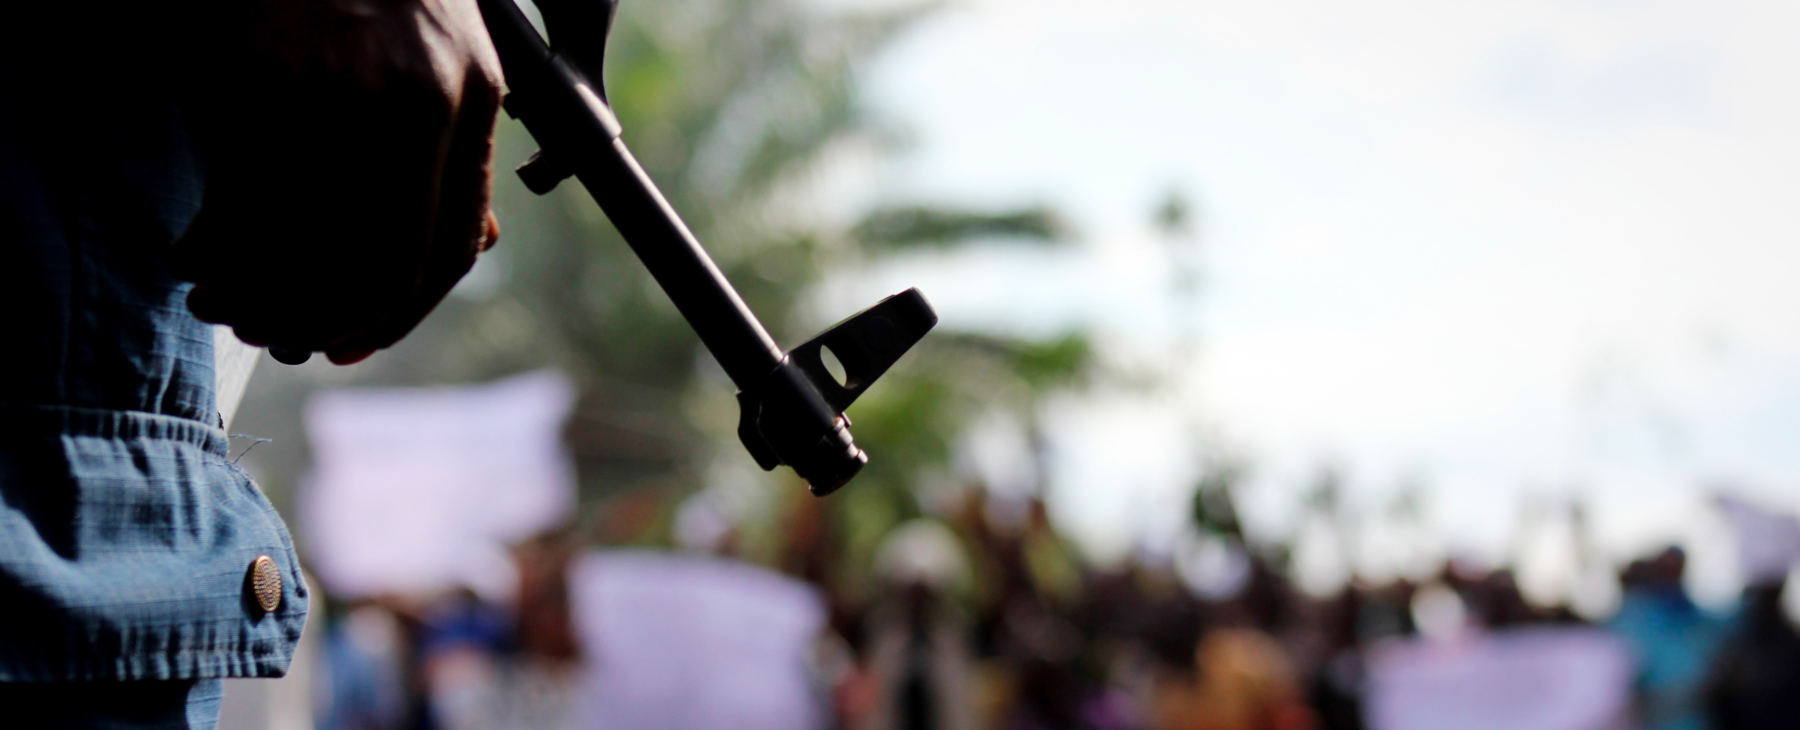 Burundi : la CADHP demande la mise en place de mécanismes pour lutter contre l’impunité des exécutions extrajudiciaires